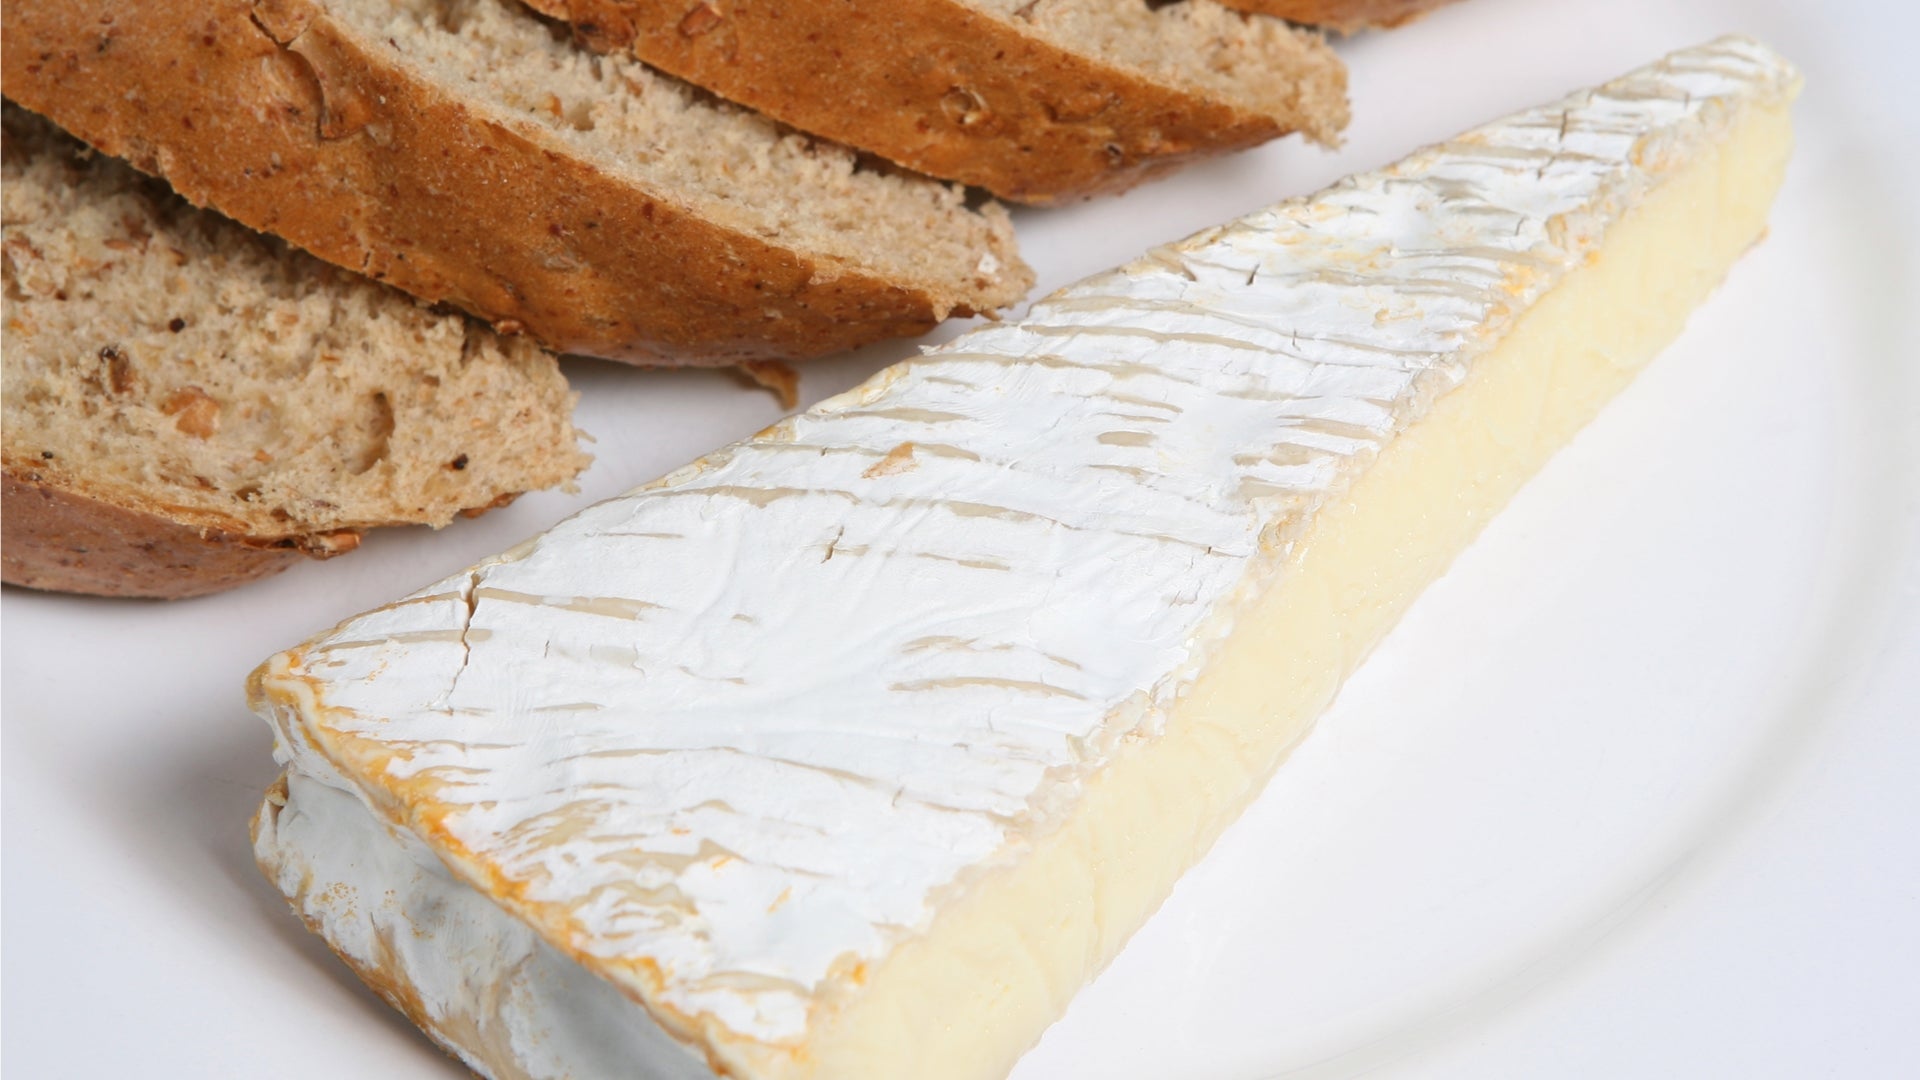 Cheese - Brie de Meaux 8 oz